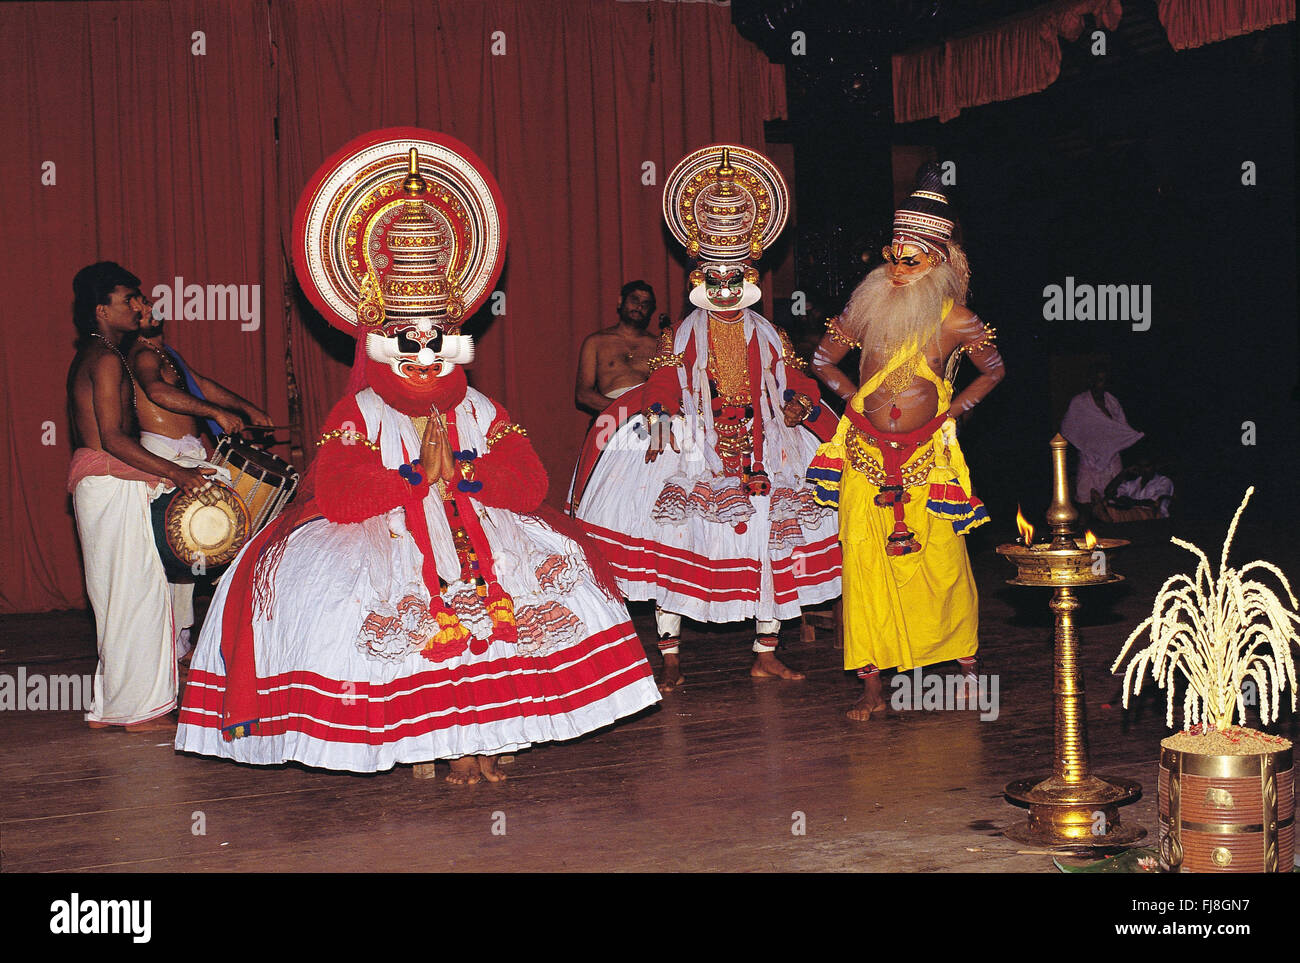 Danseuse de Kathakali danse scène sur scène, Kerala, Inde, Asie Banque D'Images